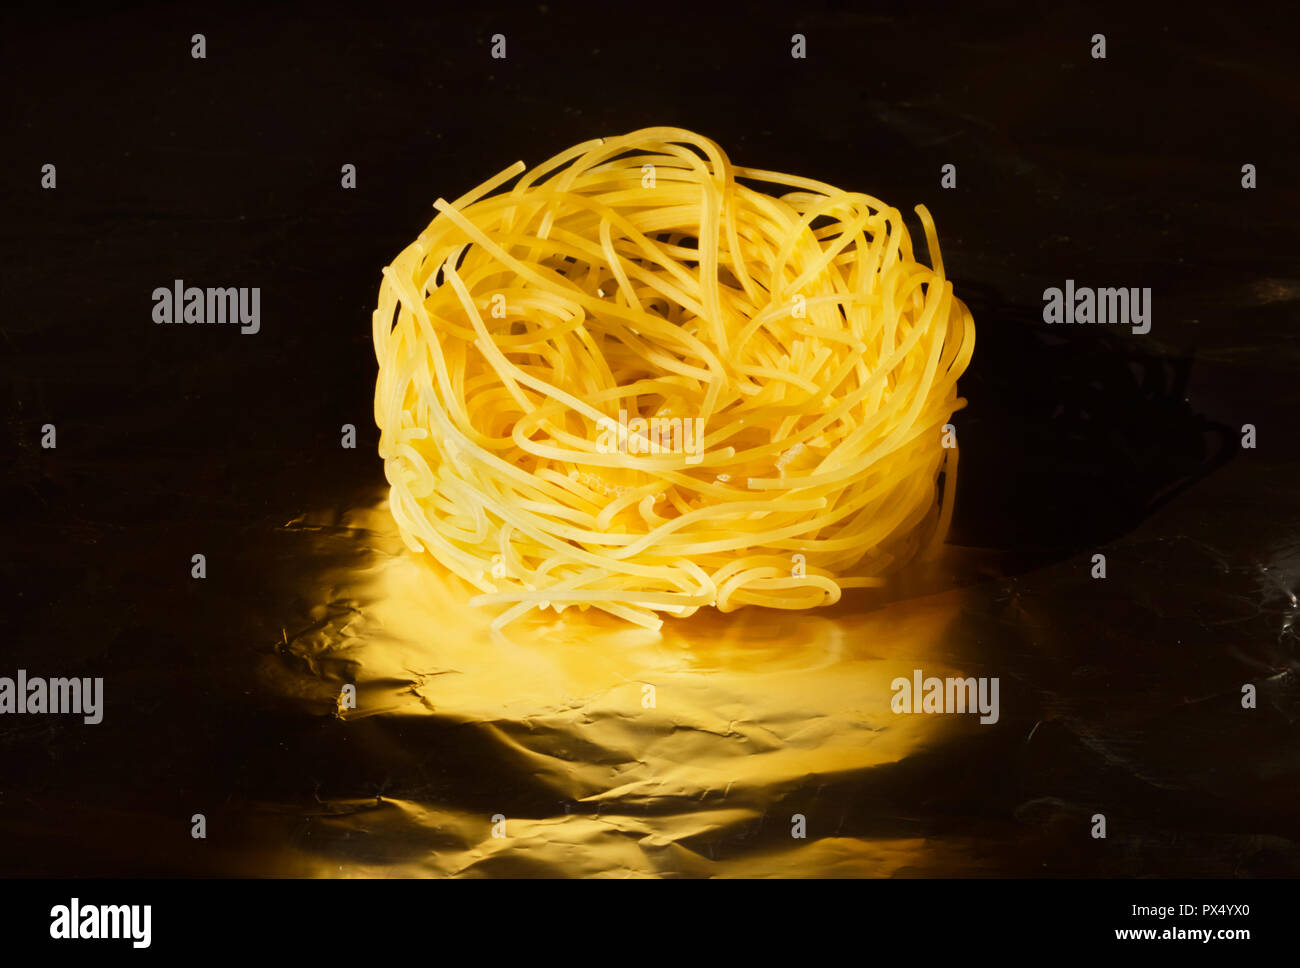 Trockene und dünne Bänder von trockenteigwaren namens Angel hair Pasta, ein helles Nest auf einem dunklen Hintergrund aus Aluminiumfolie, studio Shot, Ansicht von oben Stockfoto